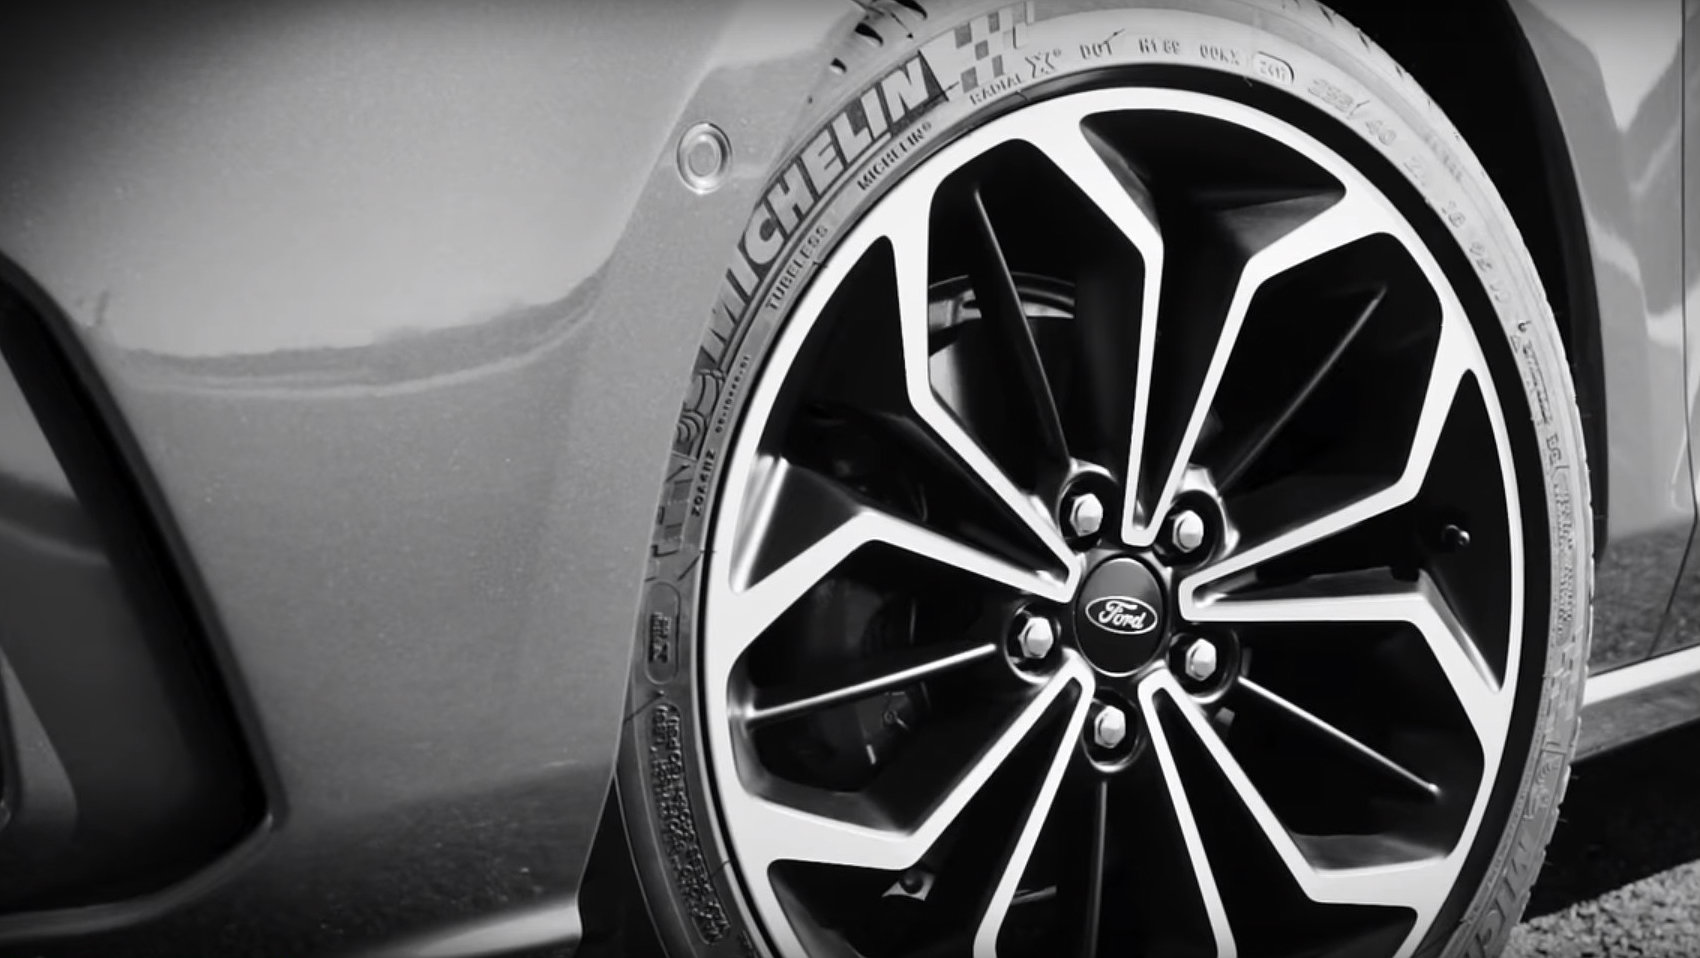  Vídeo revela o design das novas rodas do hatch médio da Ford